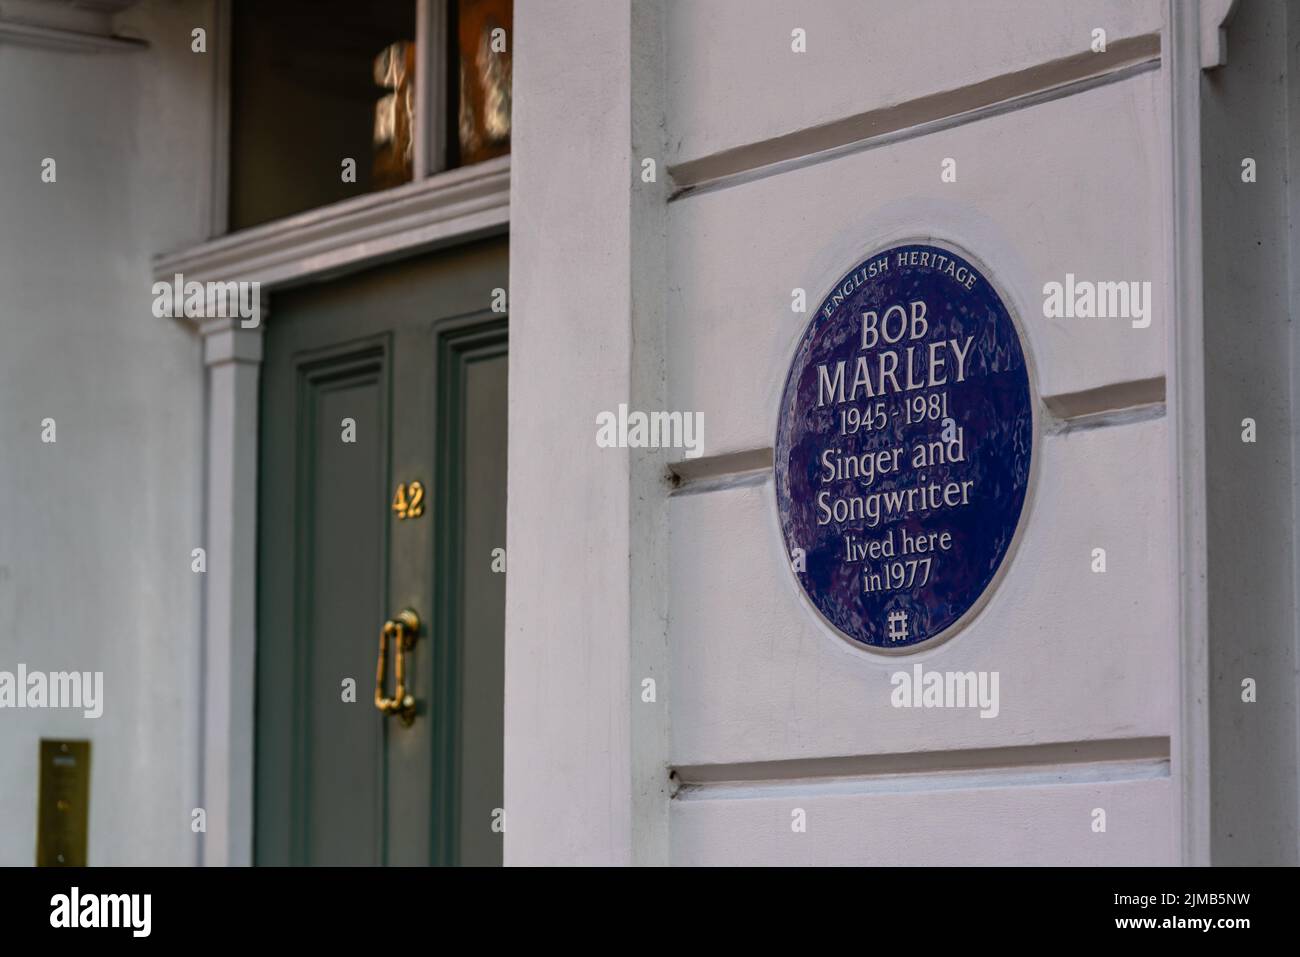 La maison précédente à Bob Marley, English Heritage Blue plaque avec porte d'entrée, Oakley Street, Chelsea, Londres, Royaume-Uni Banque D'Images